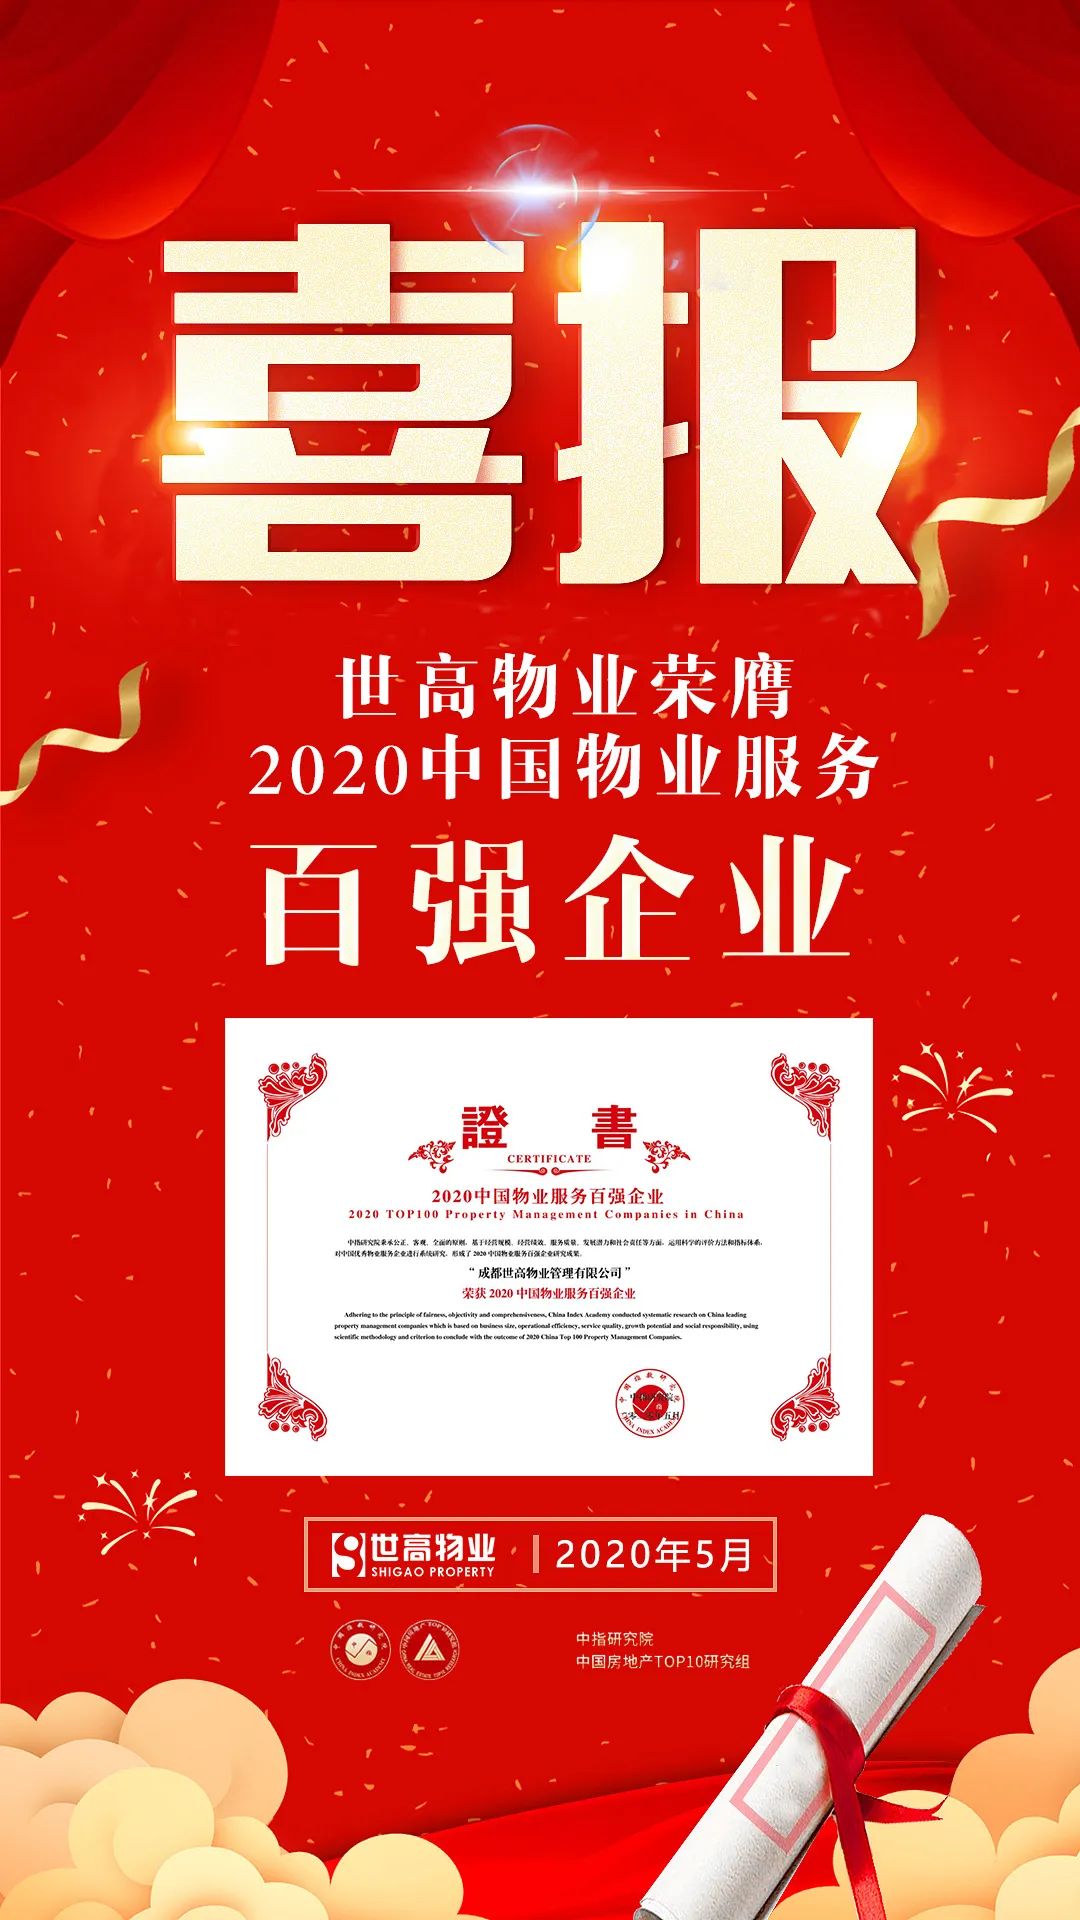 重磅 - 世高物業榮膺“2020中國物業服務百強企業”